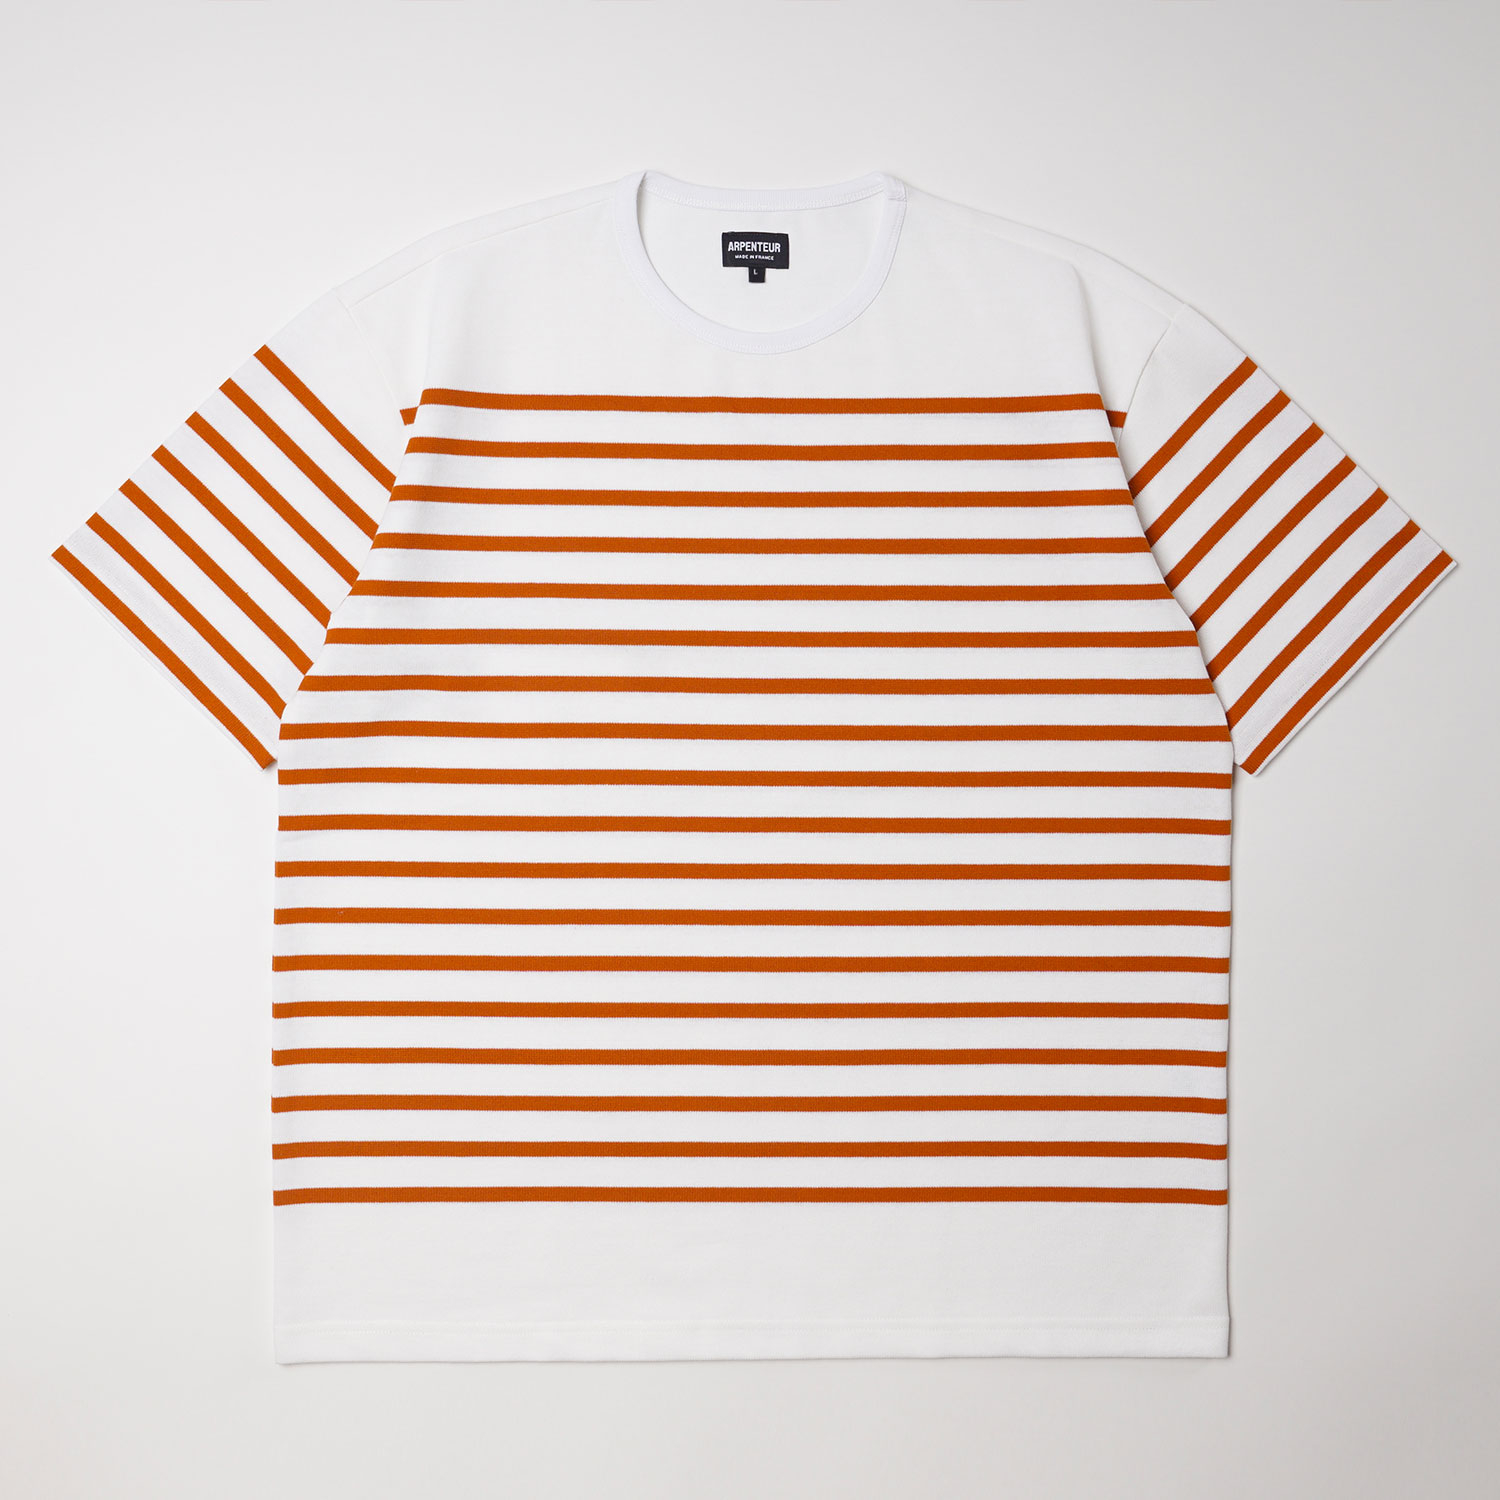 RACHEL t-shirt in White Orange color by Arpenteur